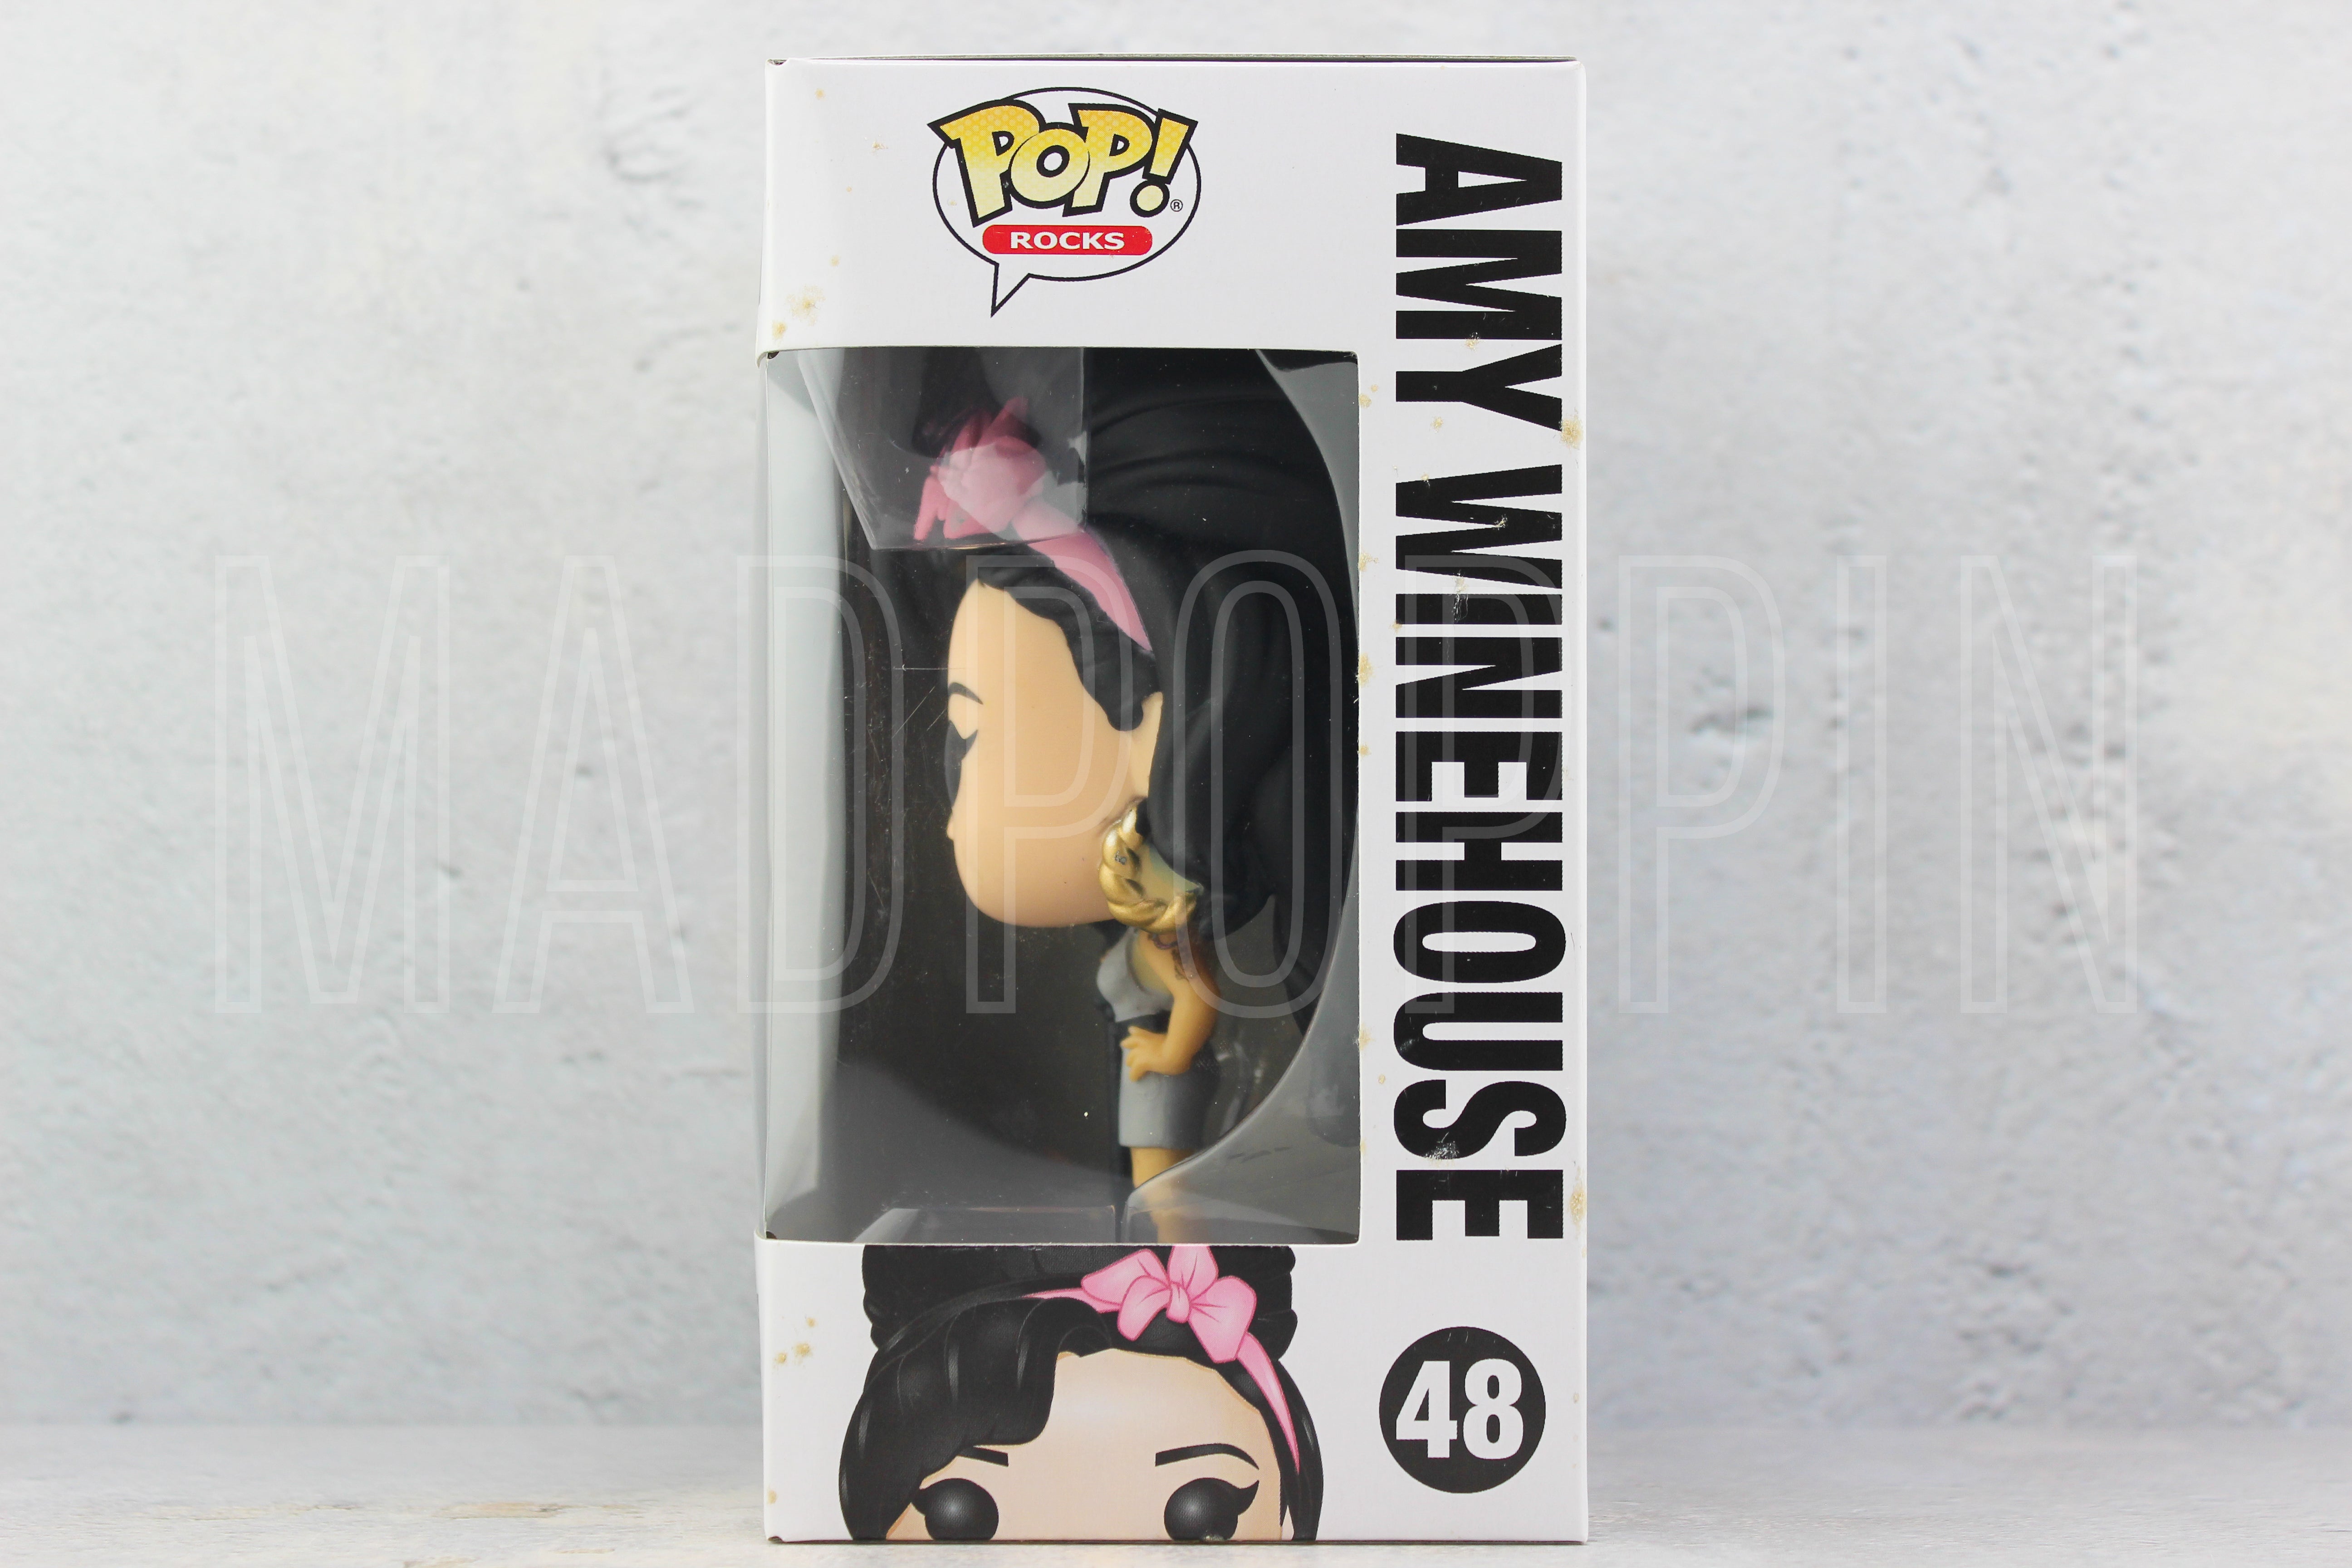 POP! Rocks: Amy Winehouse - Amy Winehouse